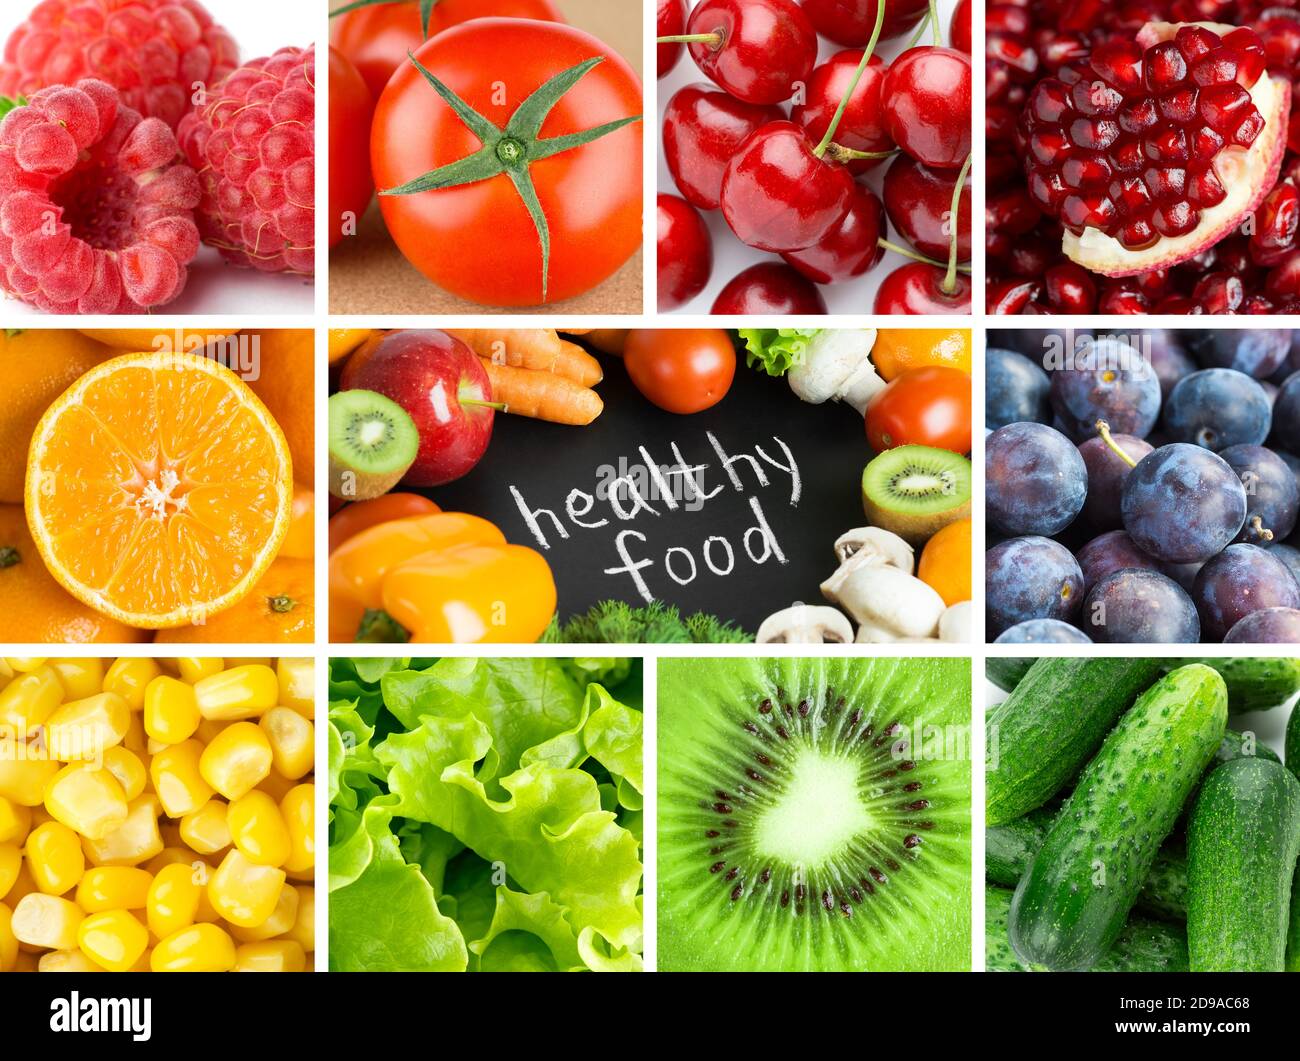 Fond de fruits et légumes frais. Une alimentation saine. Aliments aux couleurs variées. Banque D'Images